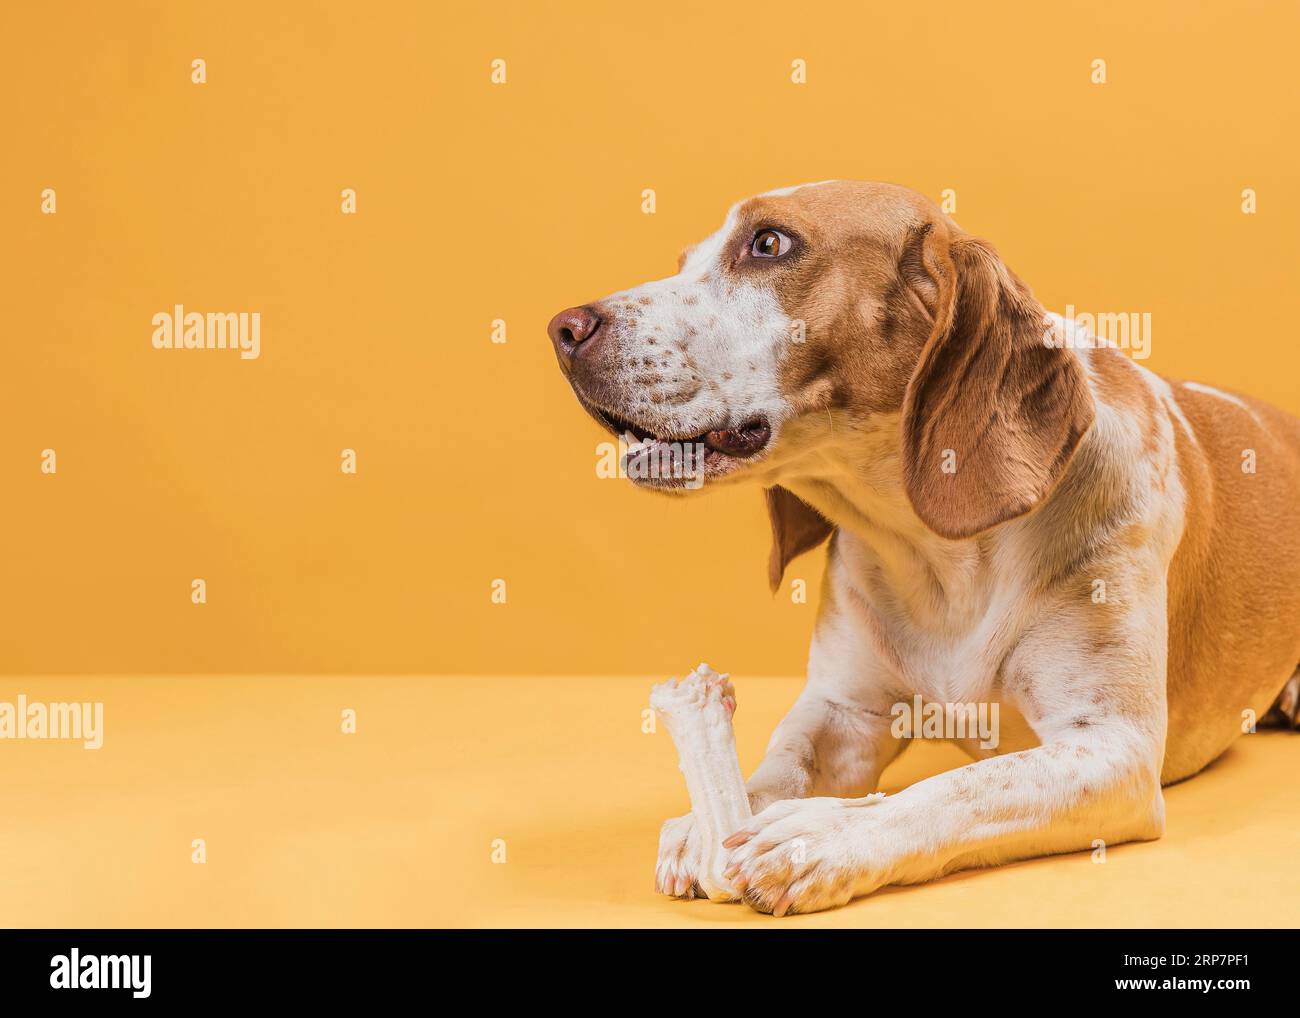 Thinking dog holding bone looking away Stock Photo